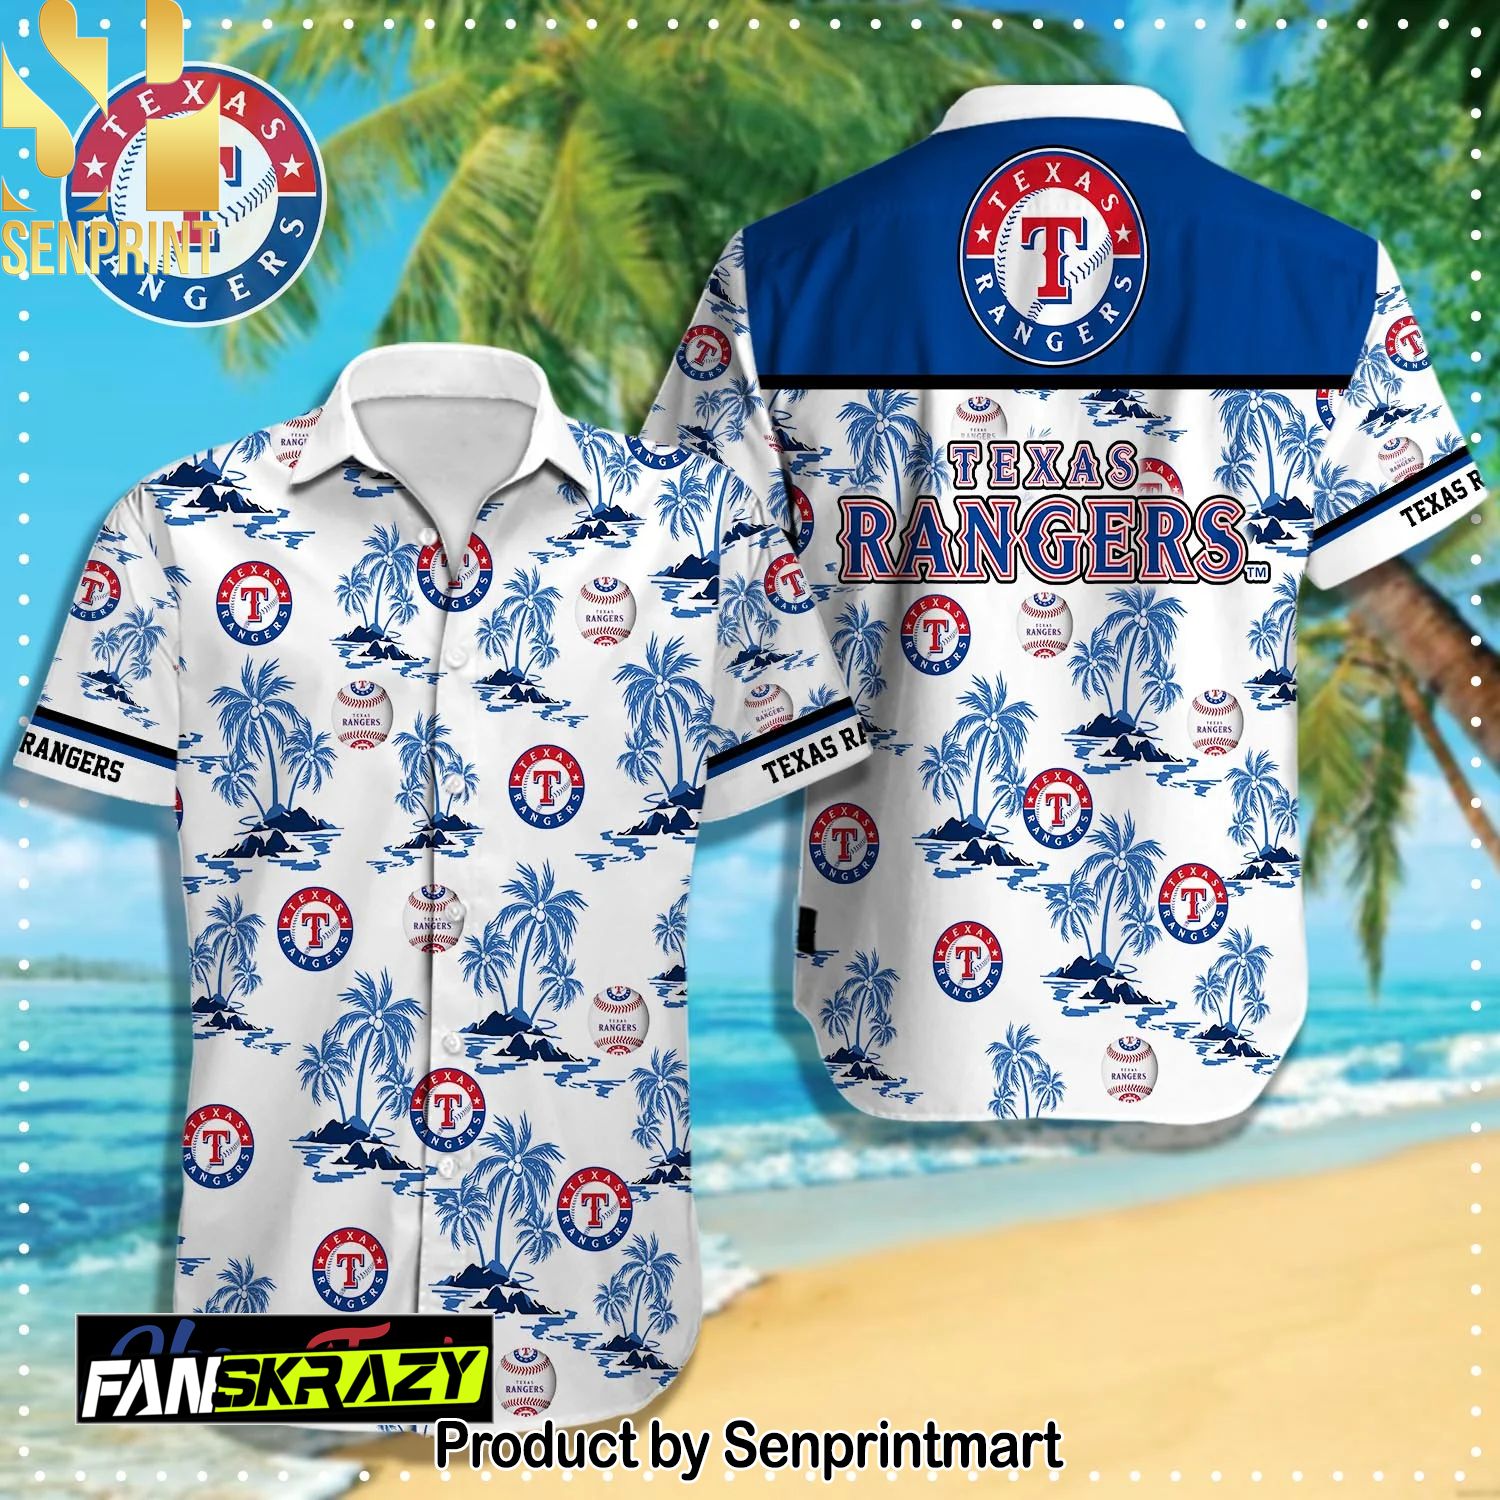 Texas Rangers MLB Awesome Outfit Hawaiian Shirt and Shorts